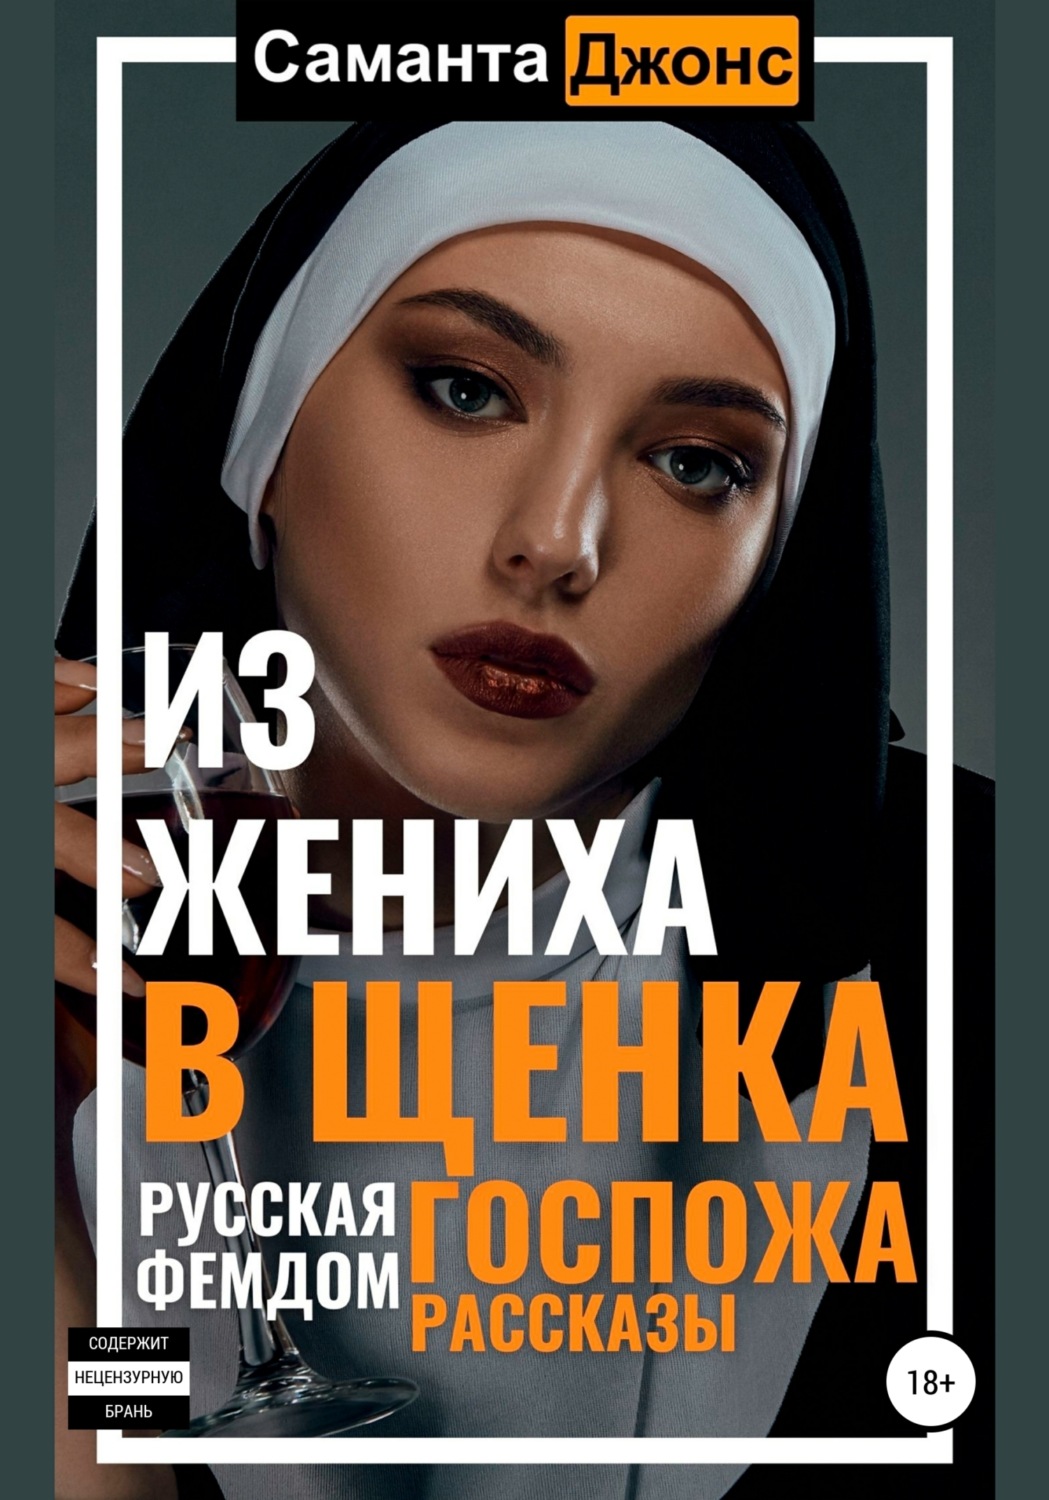 Русские госпожи и - порно видео на поселокдемидов.рф